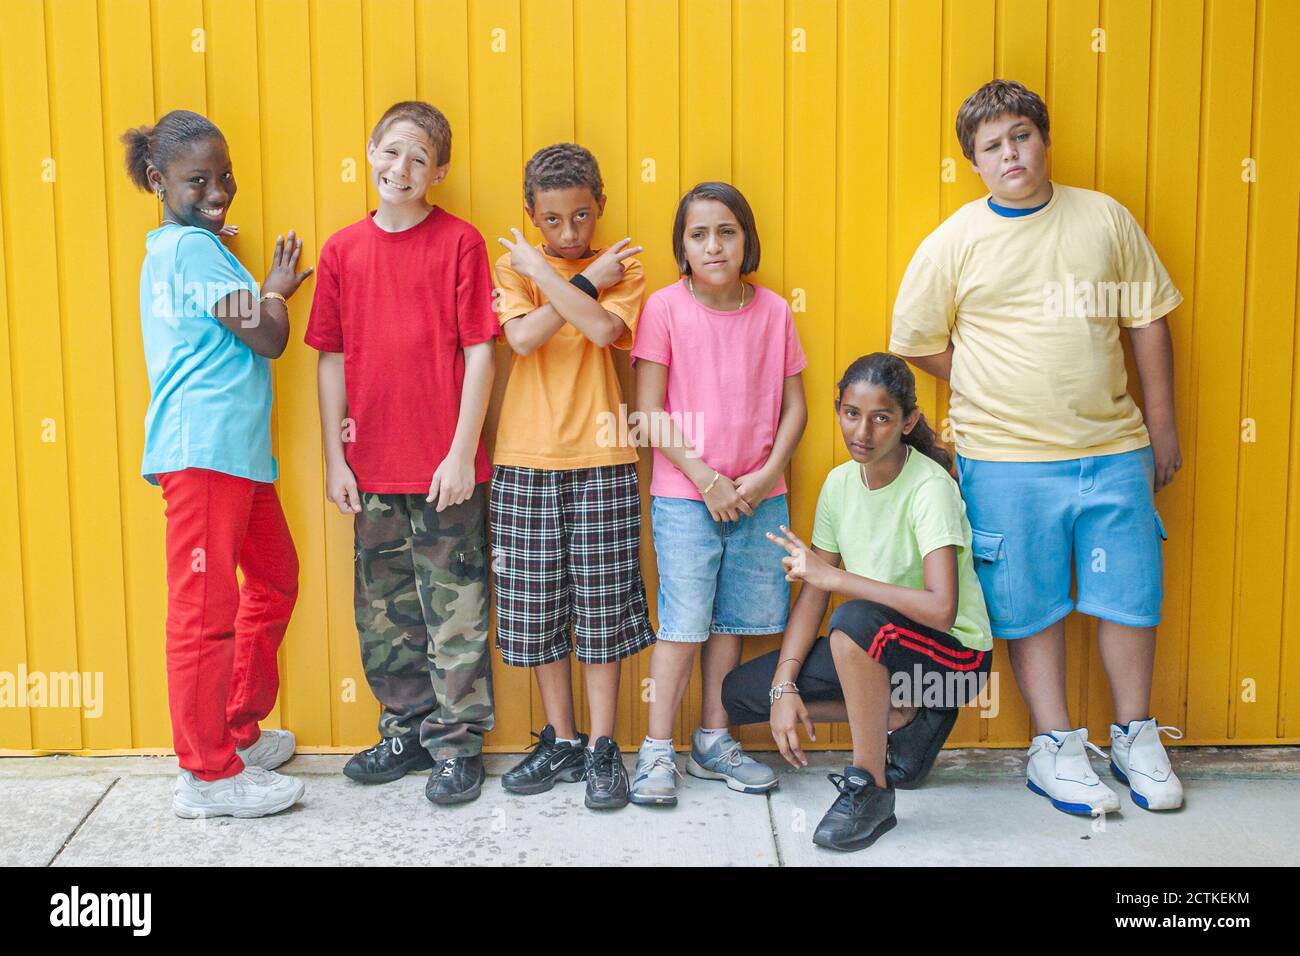 Miami Florida,non violence Project USA,studenti che insegnano comportamento non violento,ragazzi ragazzo ragazza girlss gruppo pose in posa,Ispanico Nero africano, Foto Stock